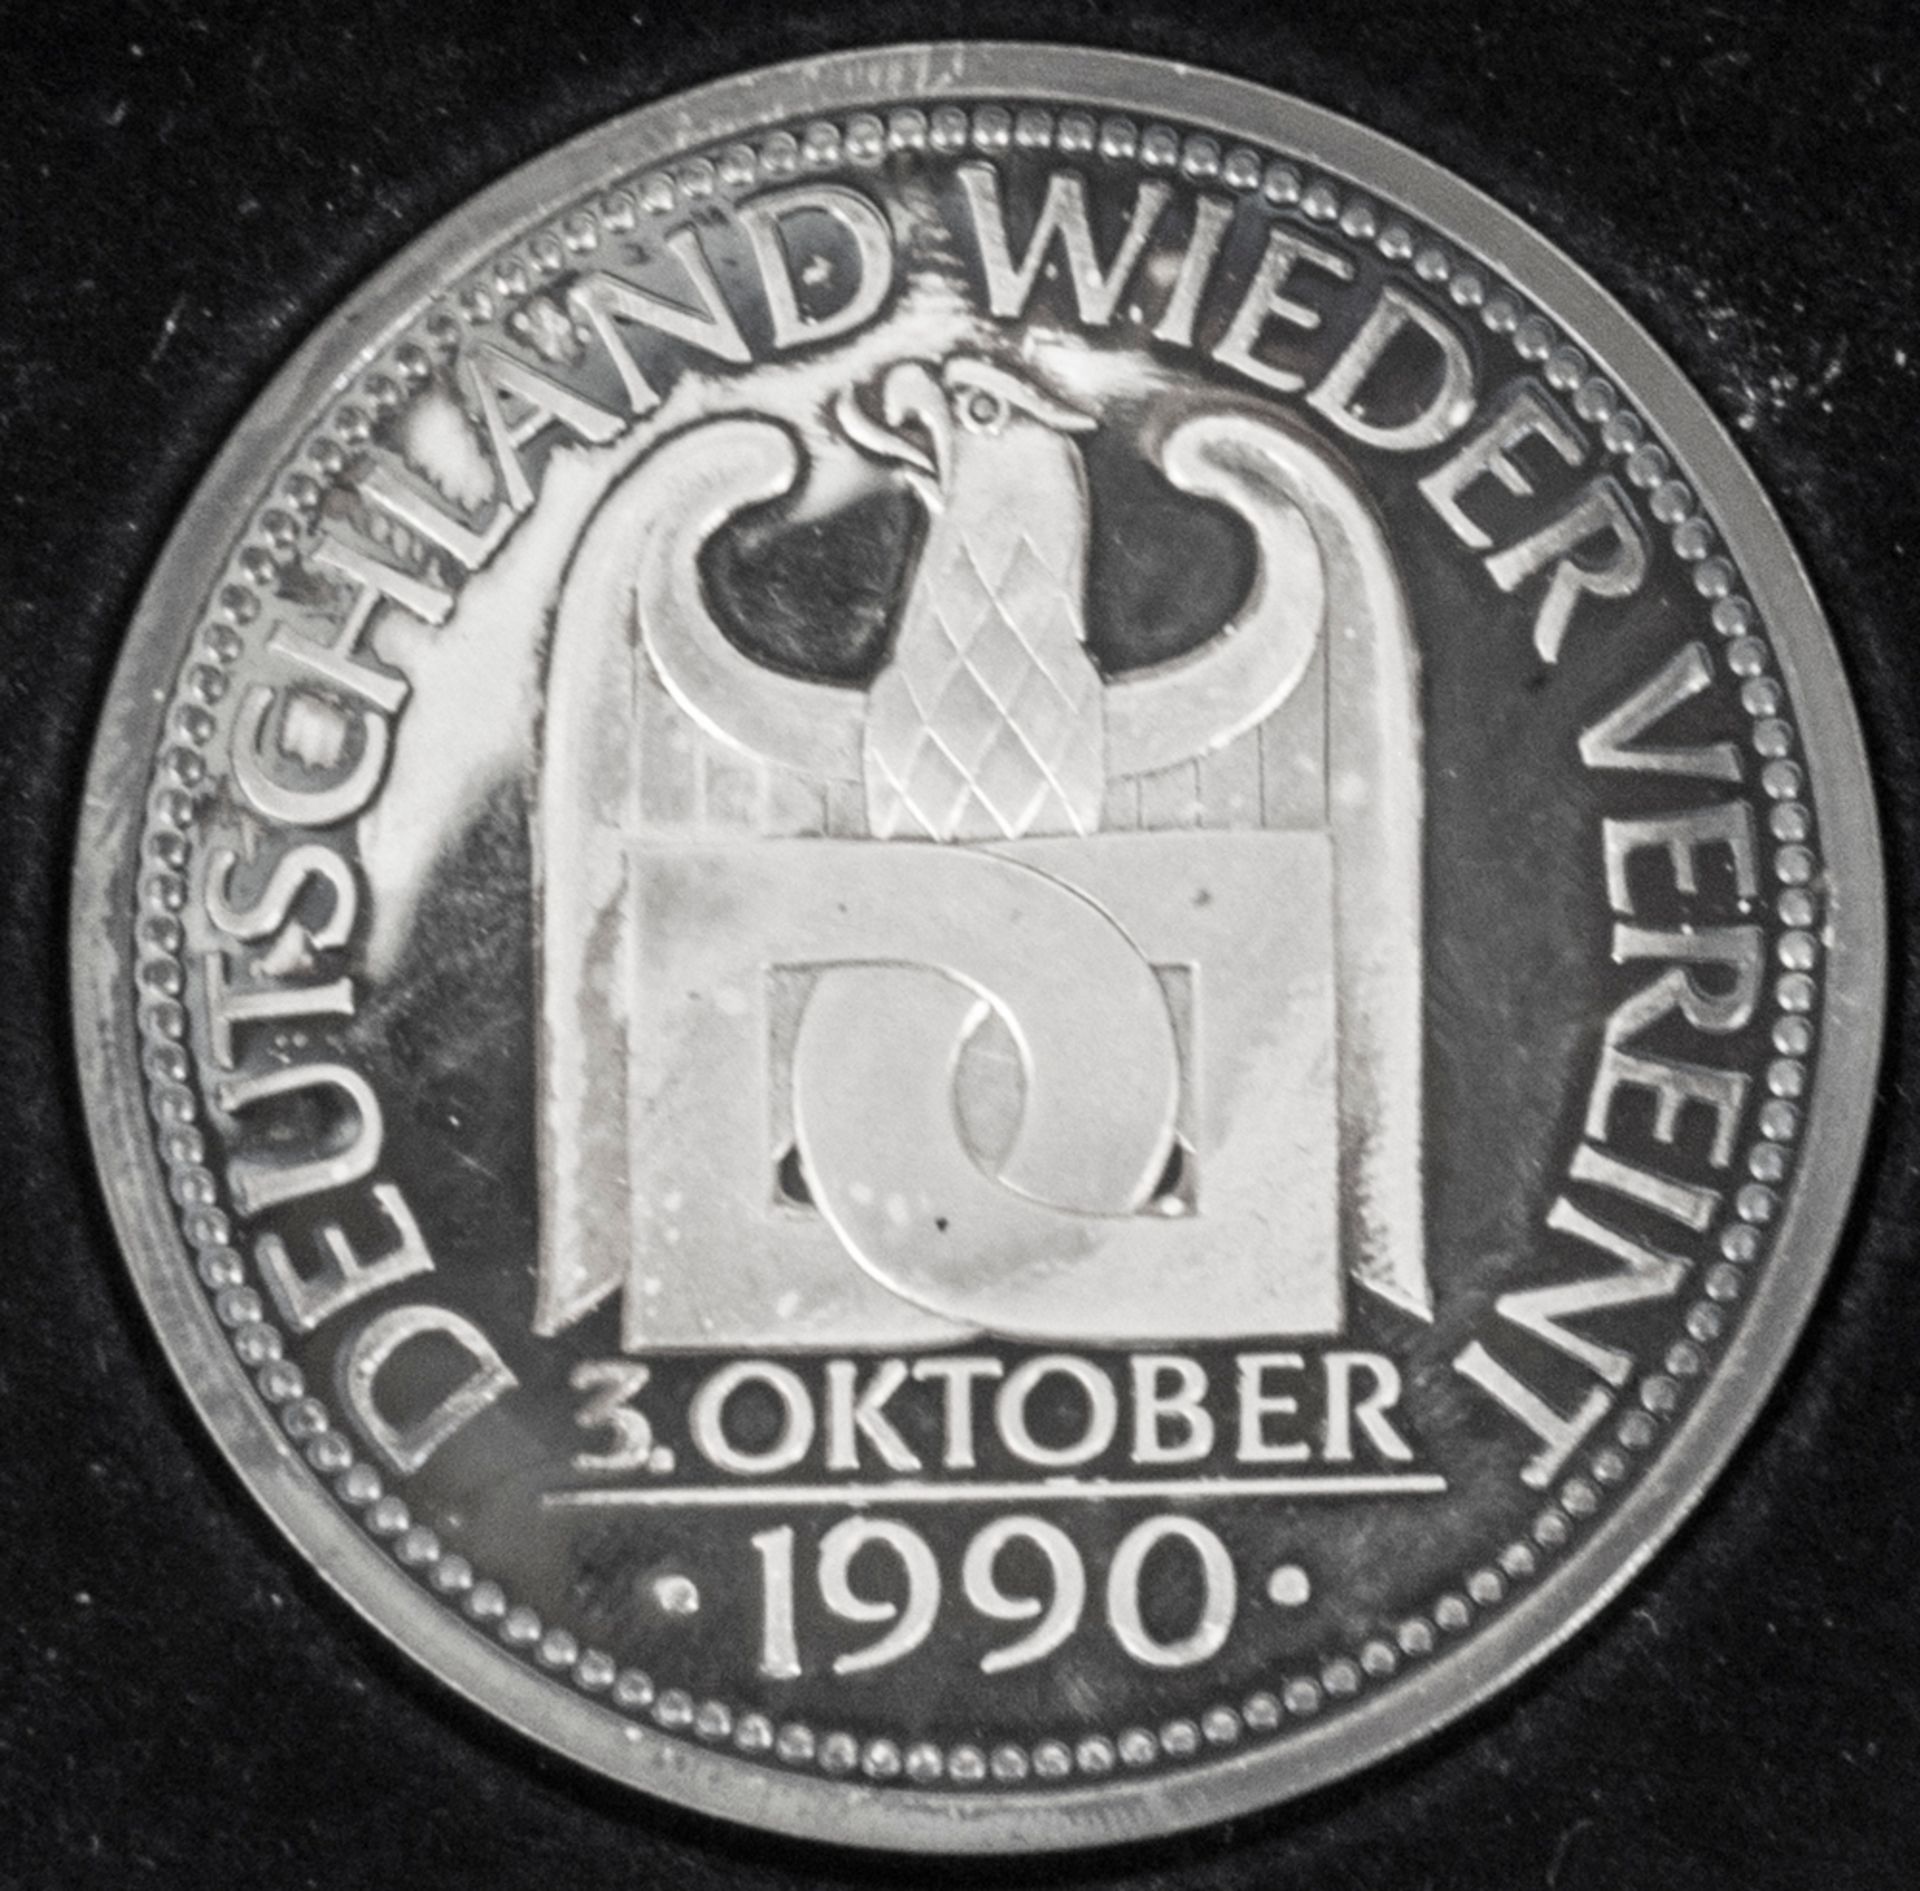 Deutschland 1990, Wiedervereinigungs - Medaille, 3. Oktober 1990, Silber 999, Durchmesser: ca. 50,